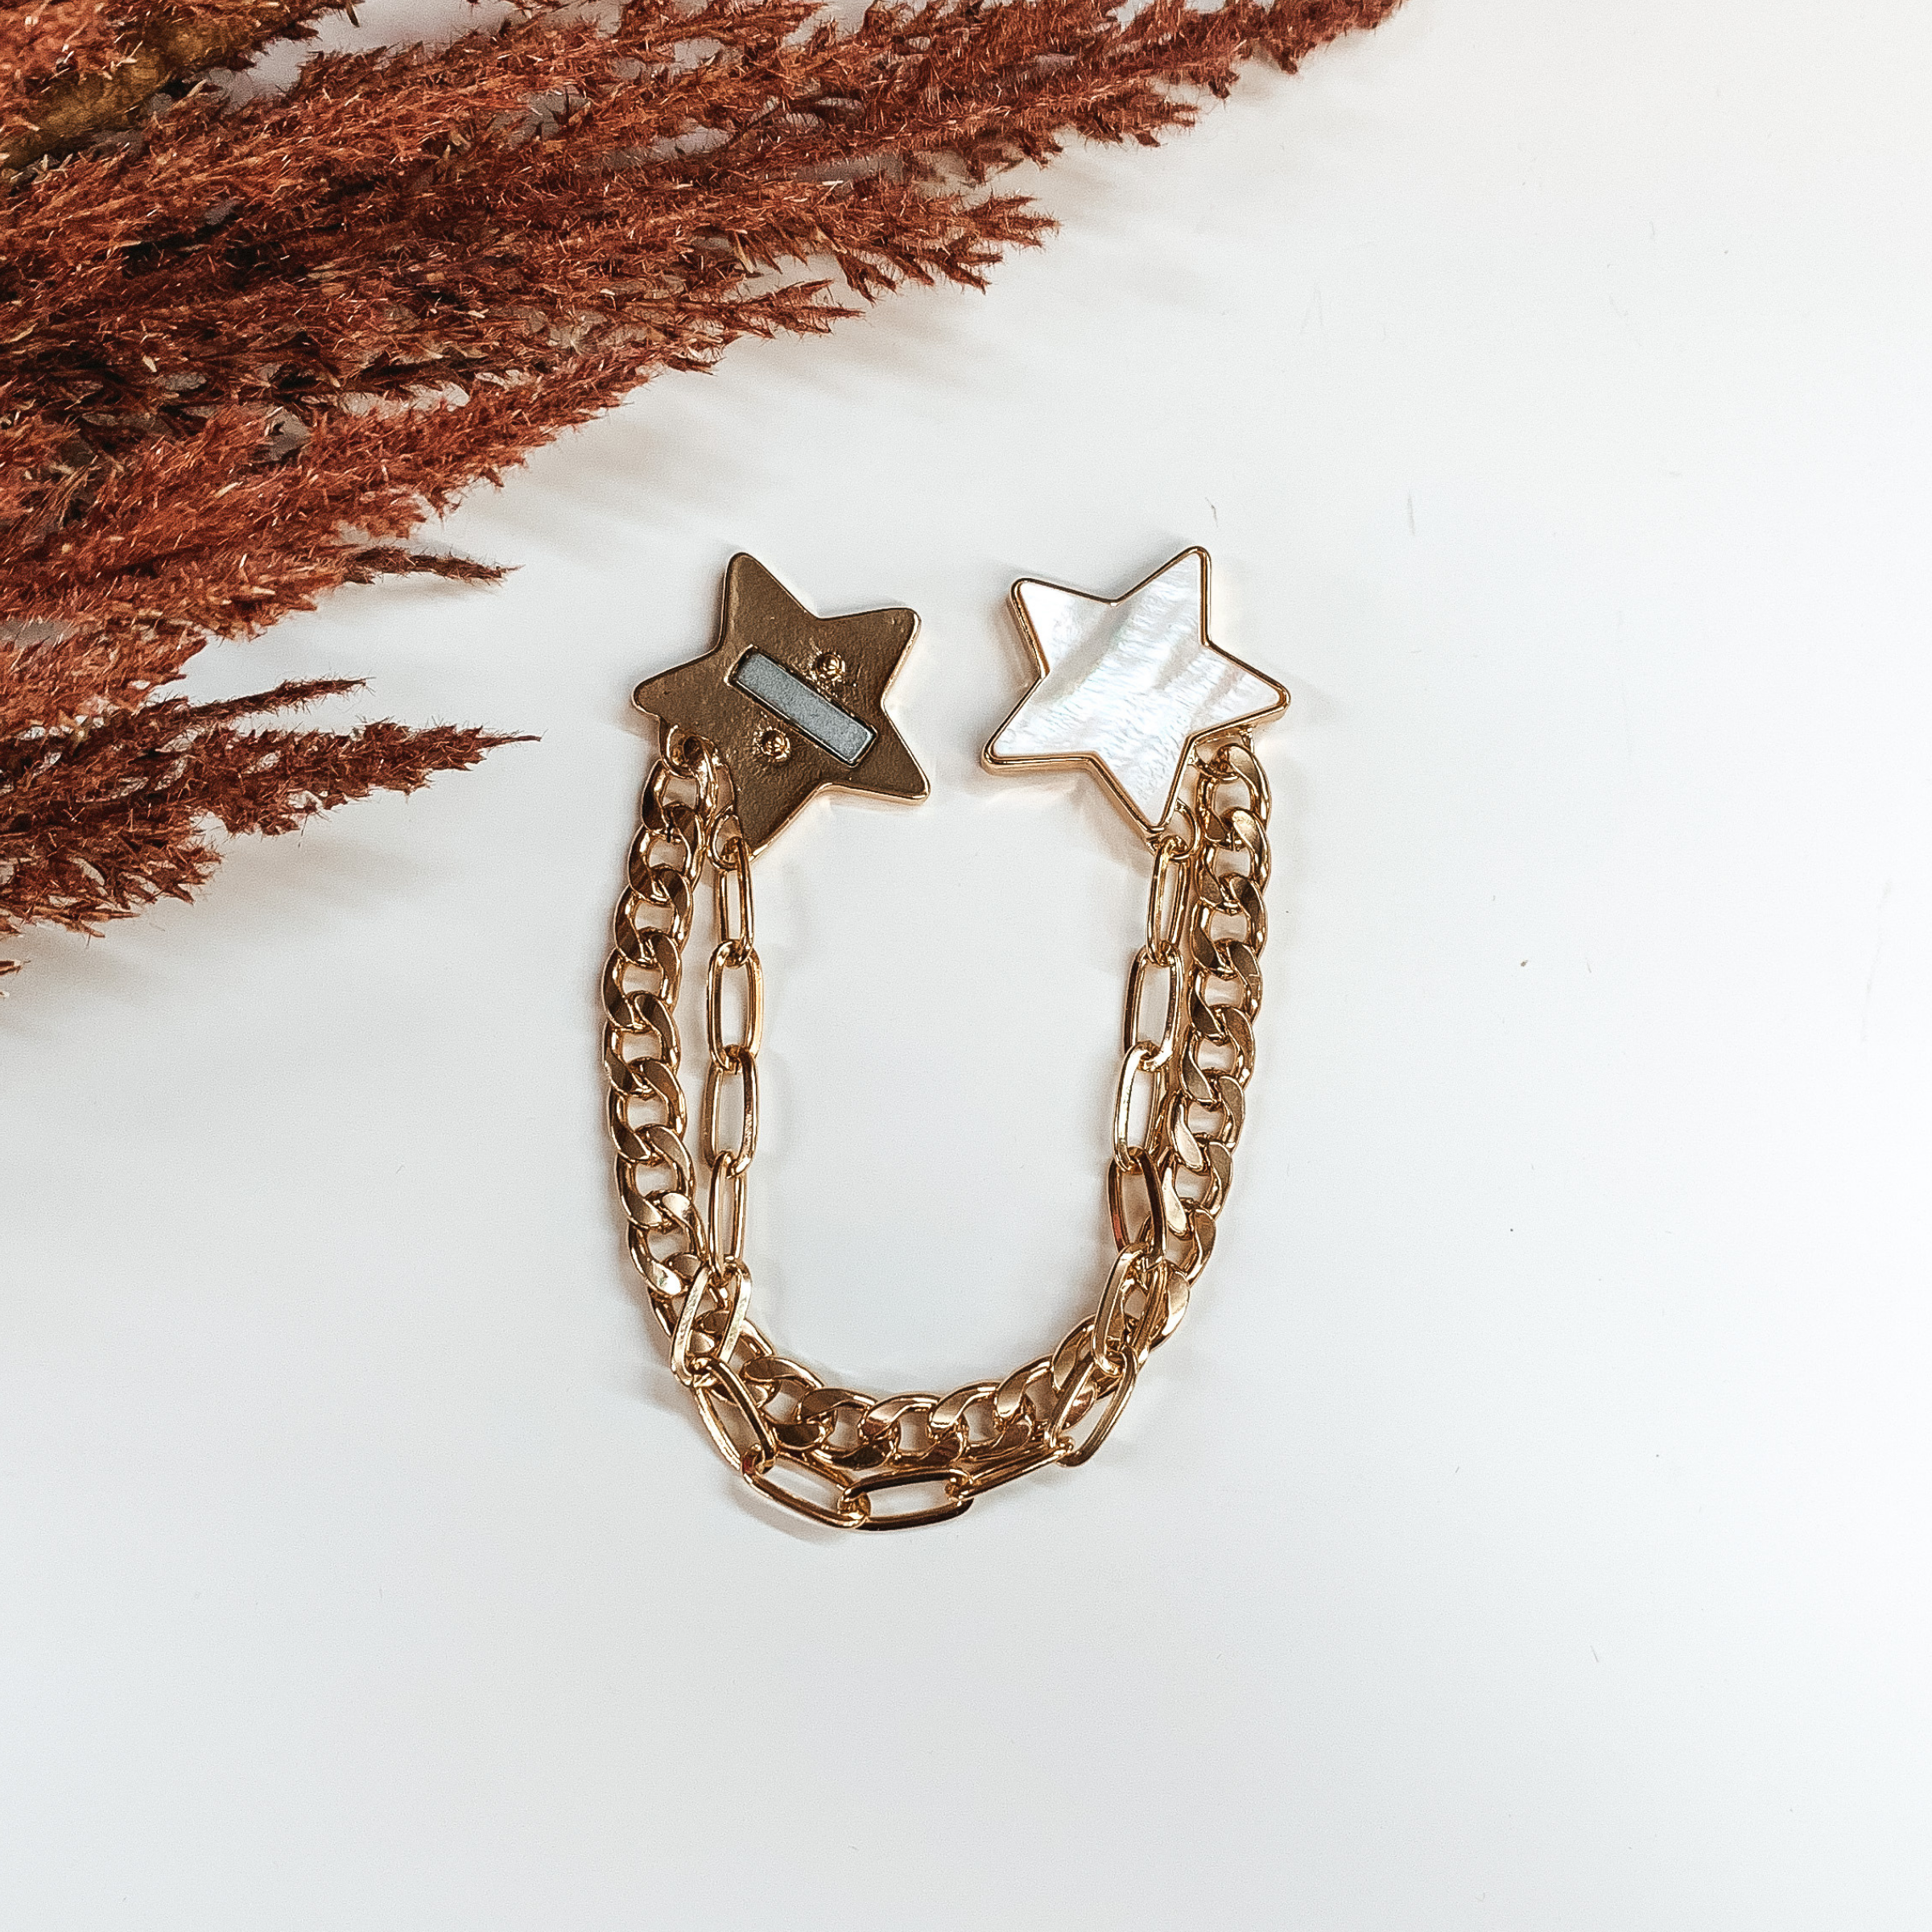 Sparks Flying Gold Bracelet in Ivory - Giddy Up Glamour Boutique